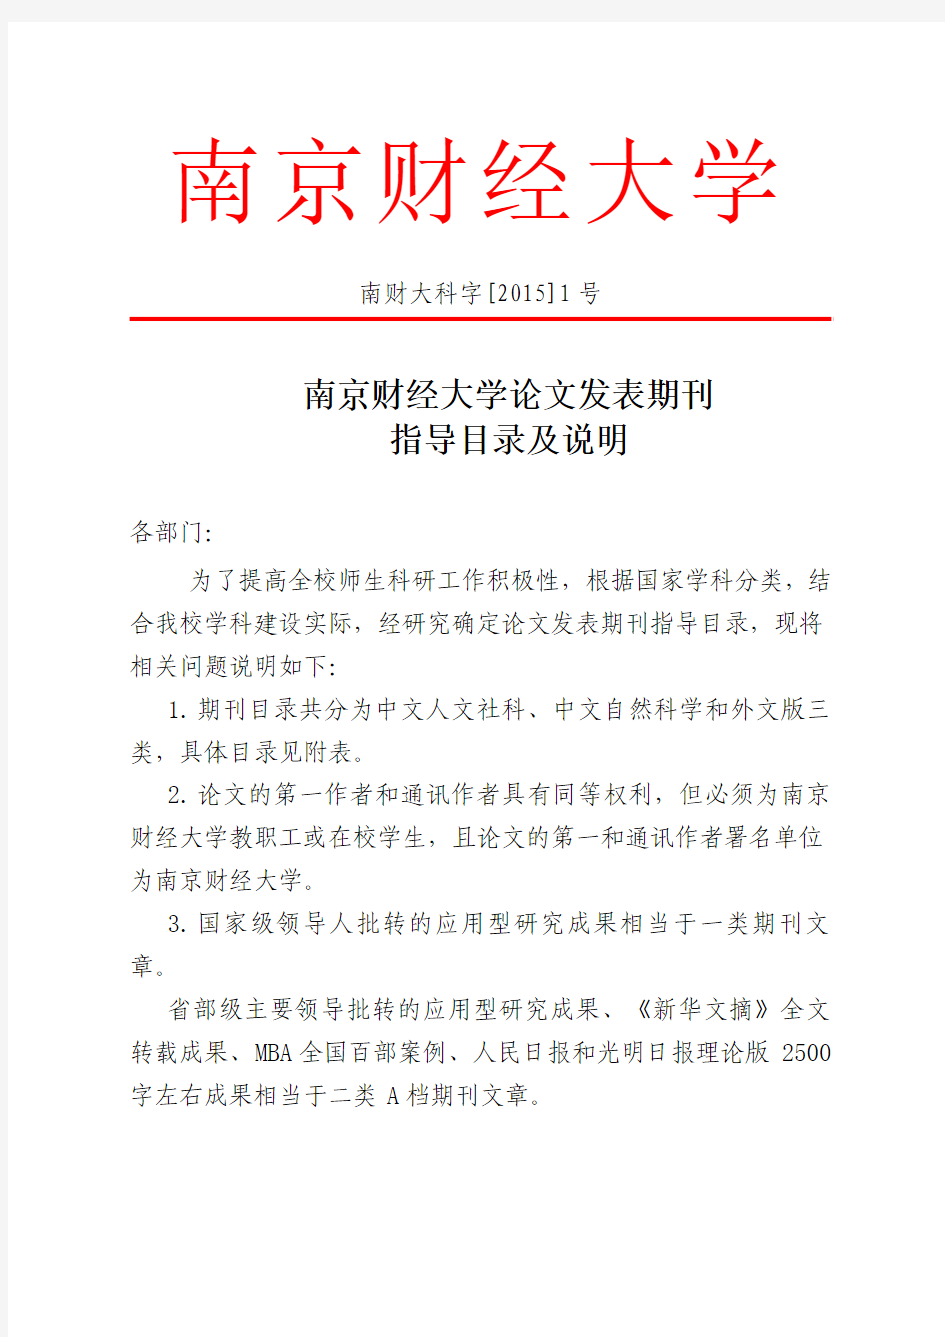 南京财经大学论文发表期刊指导目录及说明